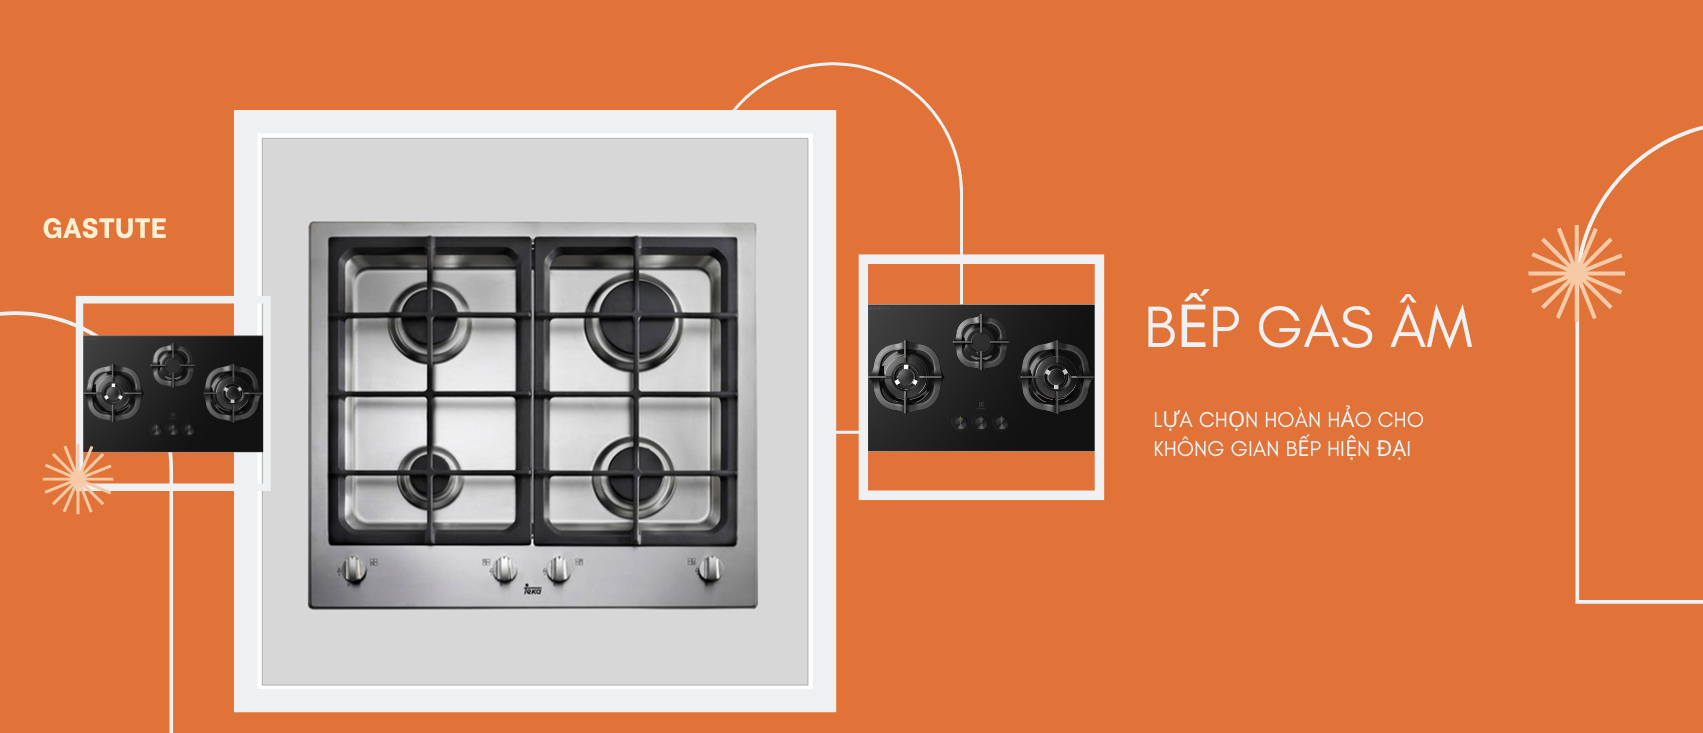 Bếp ga âm tốt nhất hiện nay - Lựa chọn hoàn hảo cho không gian bếp hiện đại